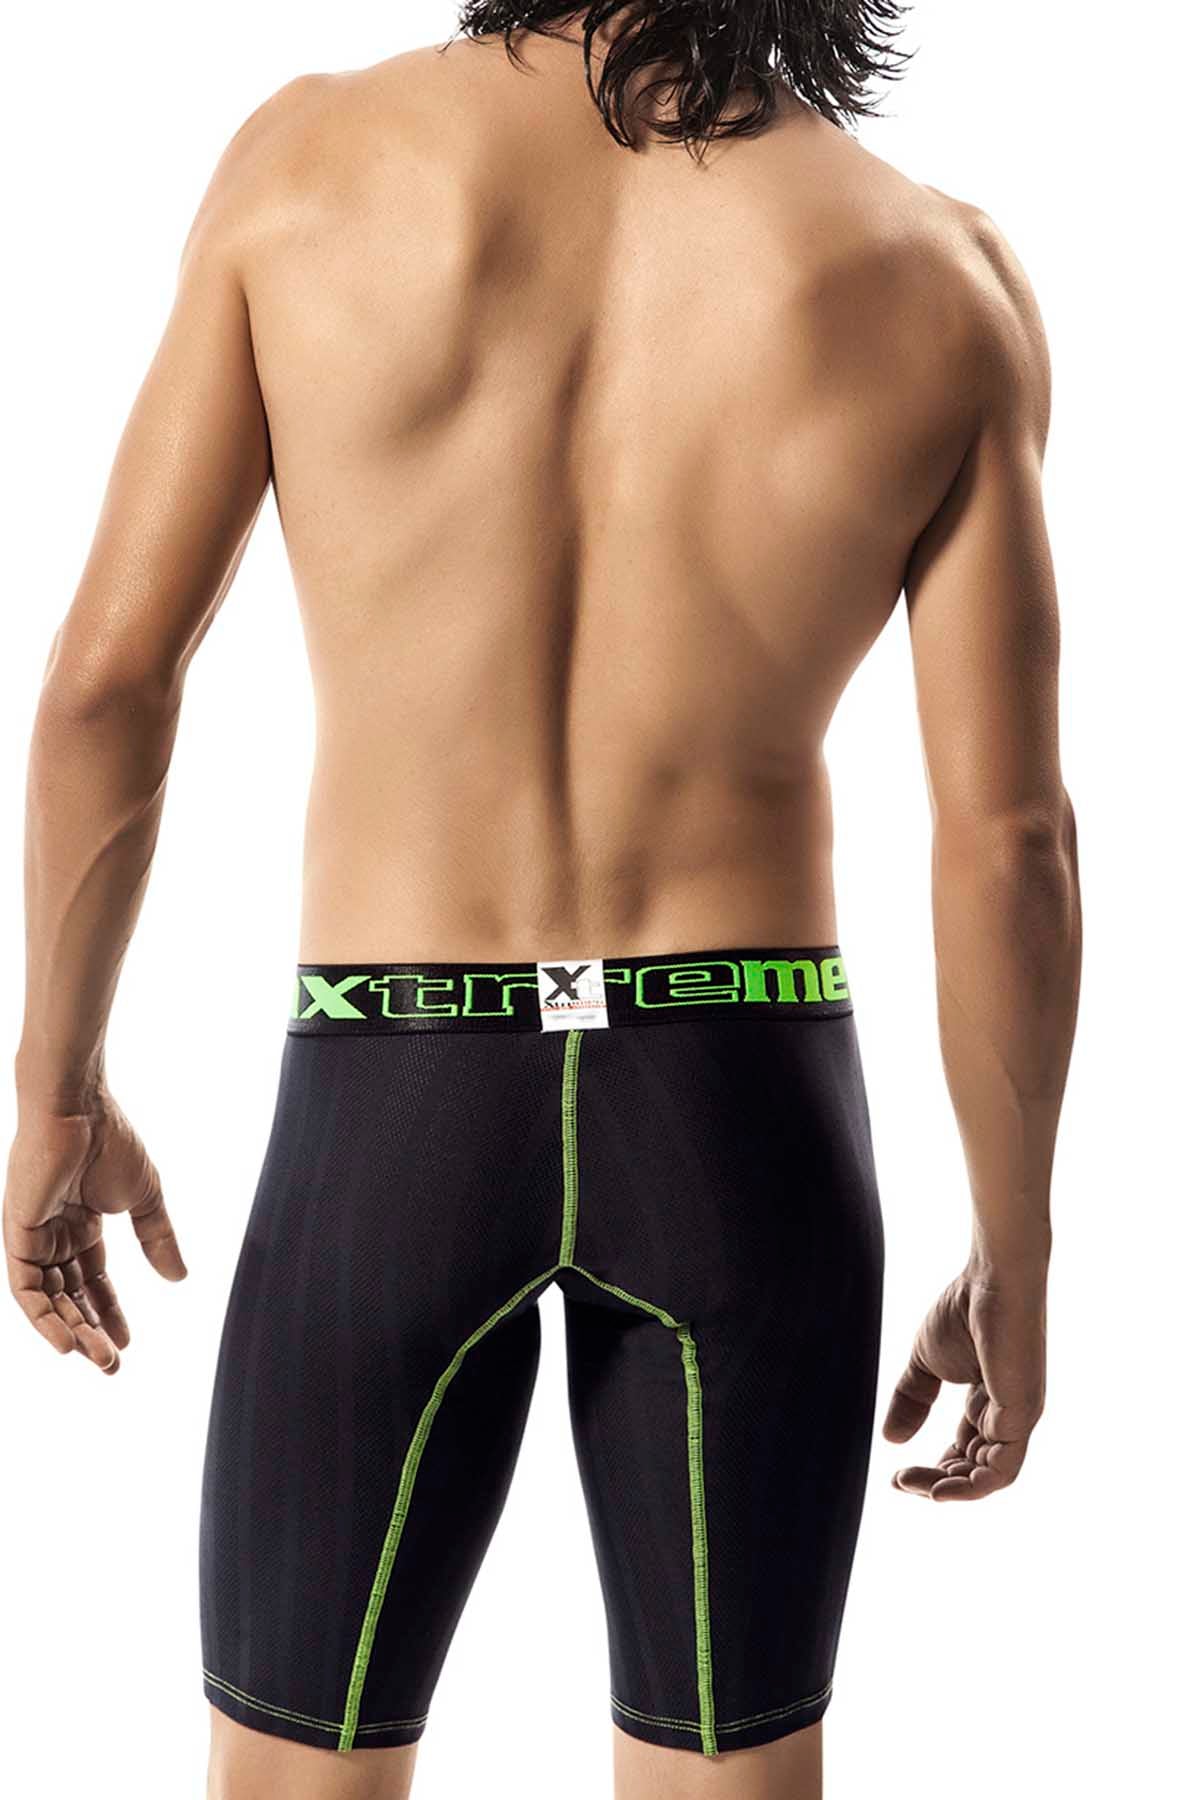 XTREMEN Black/Green Microfiber Long-Boxer